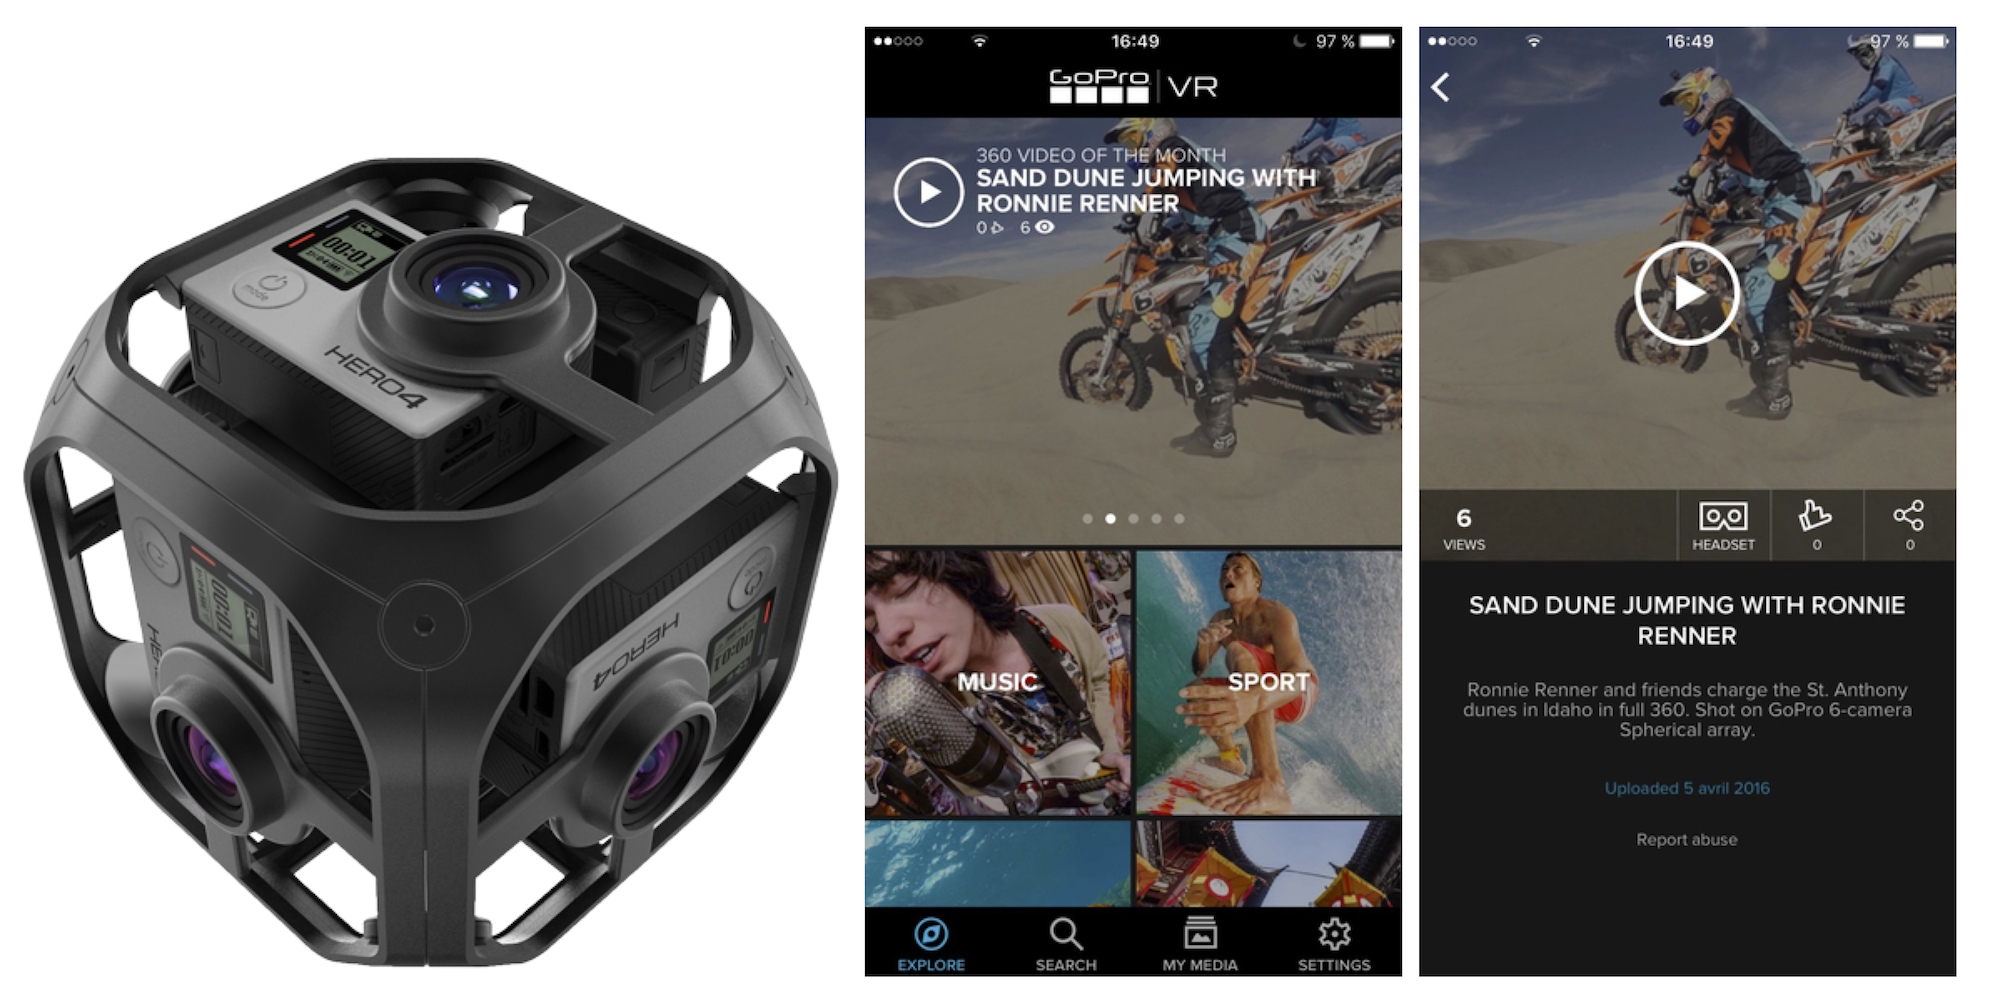 GoPro VR trasforma gli iPad in dispositivi di realtà virtuale